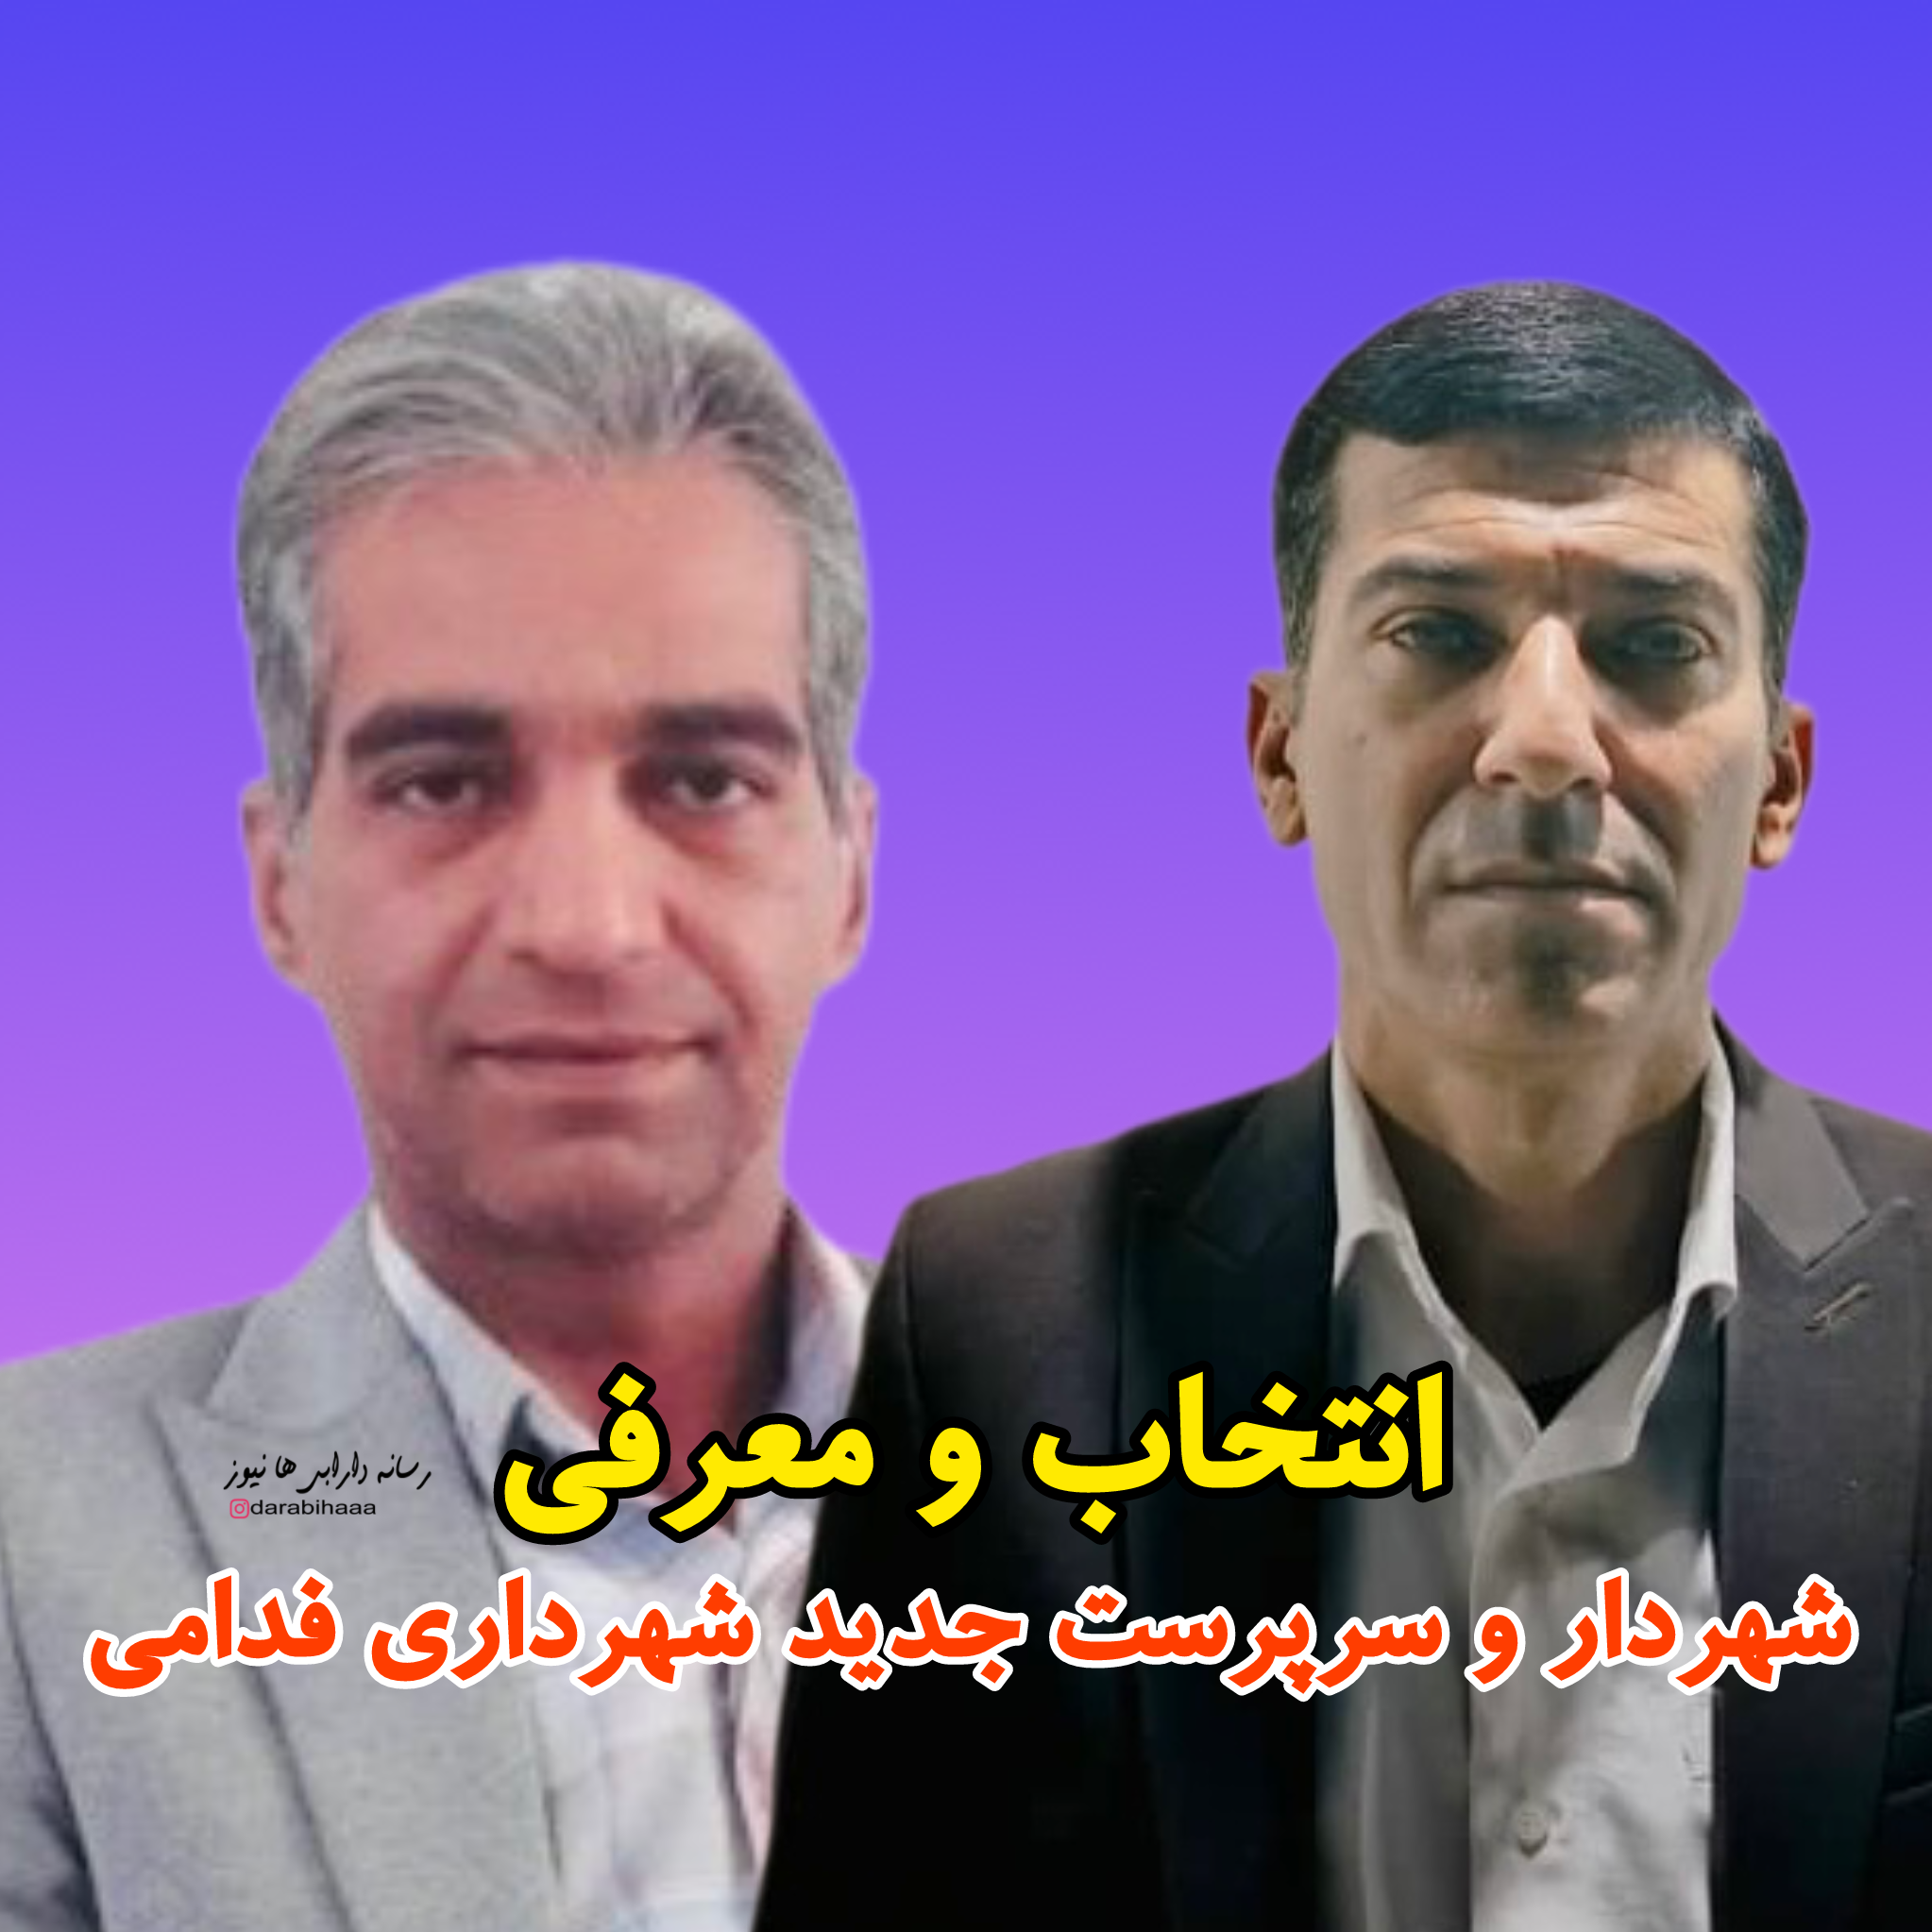 انتخاب و معرفی شهردار و سرپرست جدید شهرداری فدامی